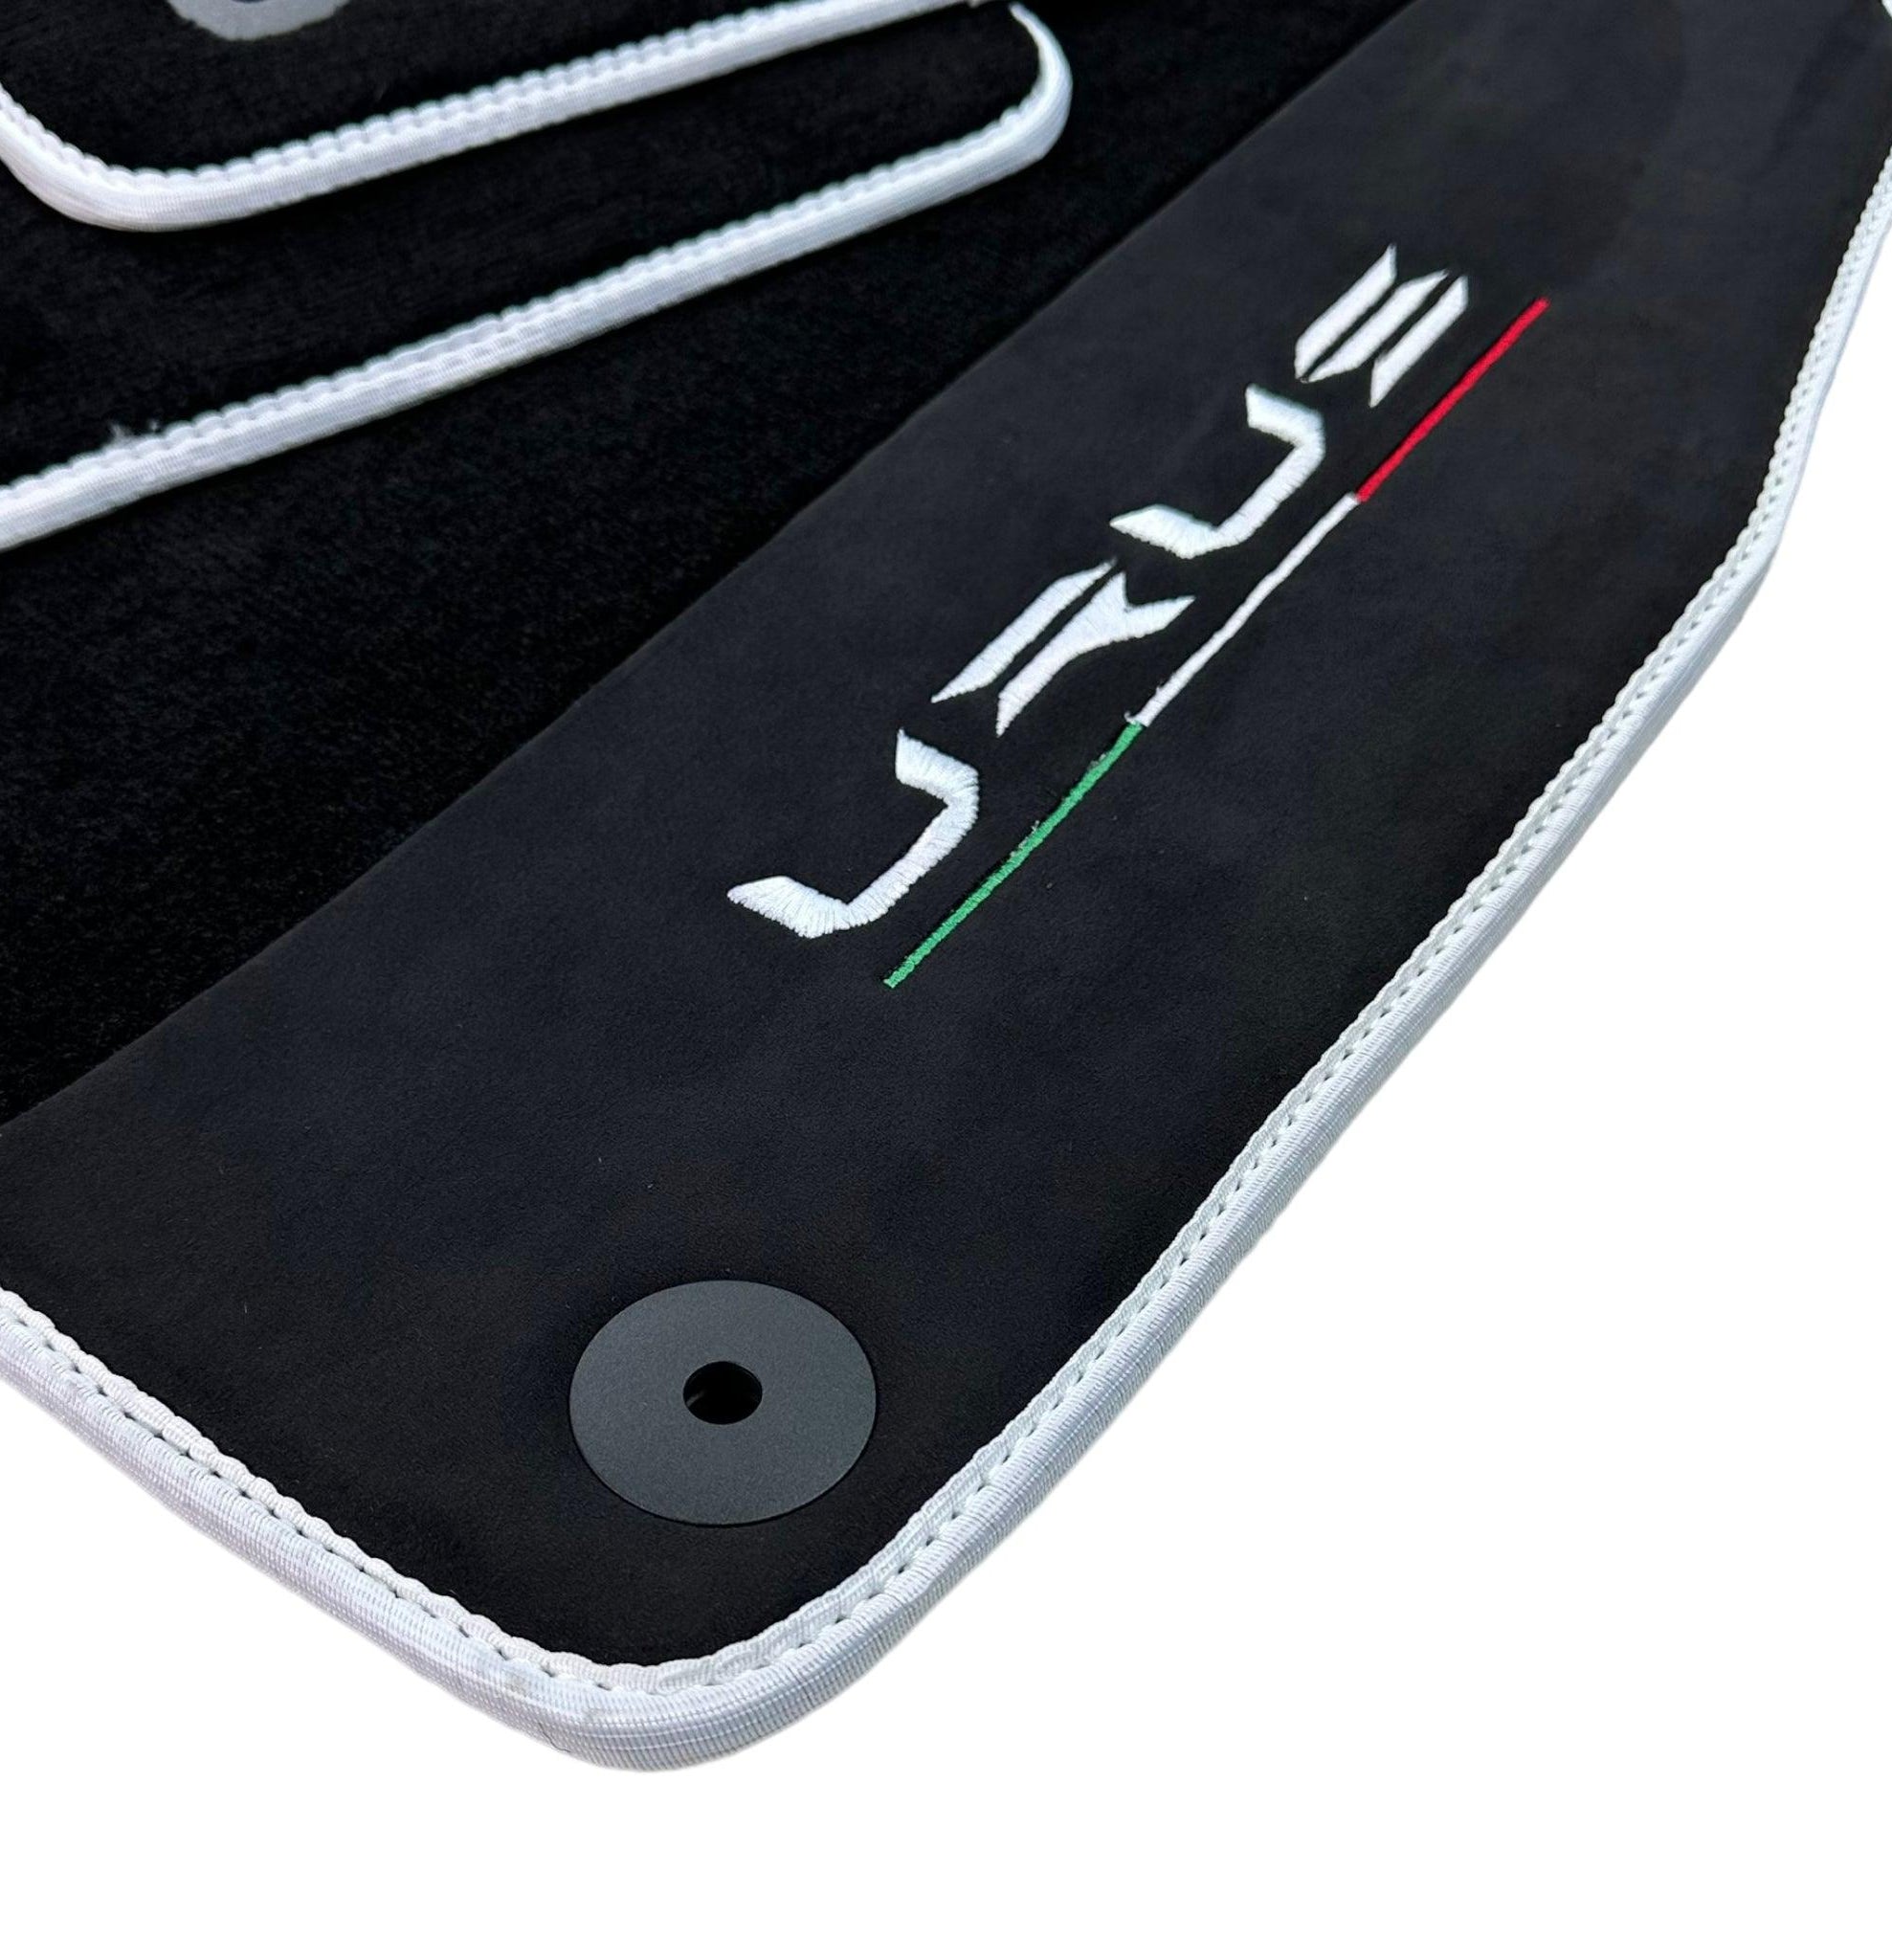 Black Floor Mats For Lamborghini Urus With Alcantara Leather White Trim - AutoWin